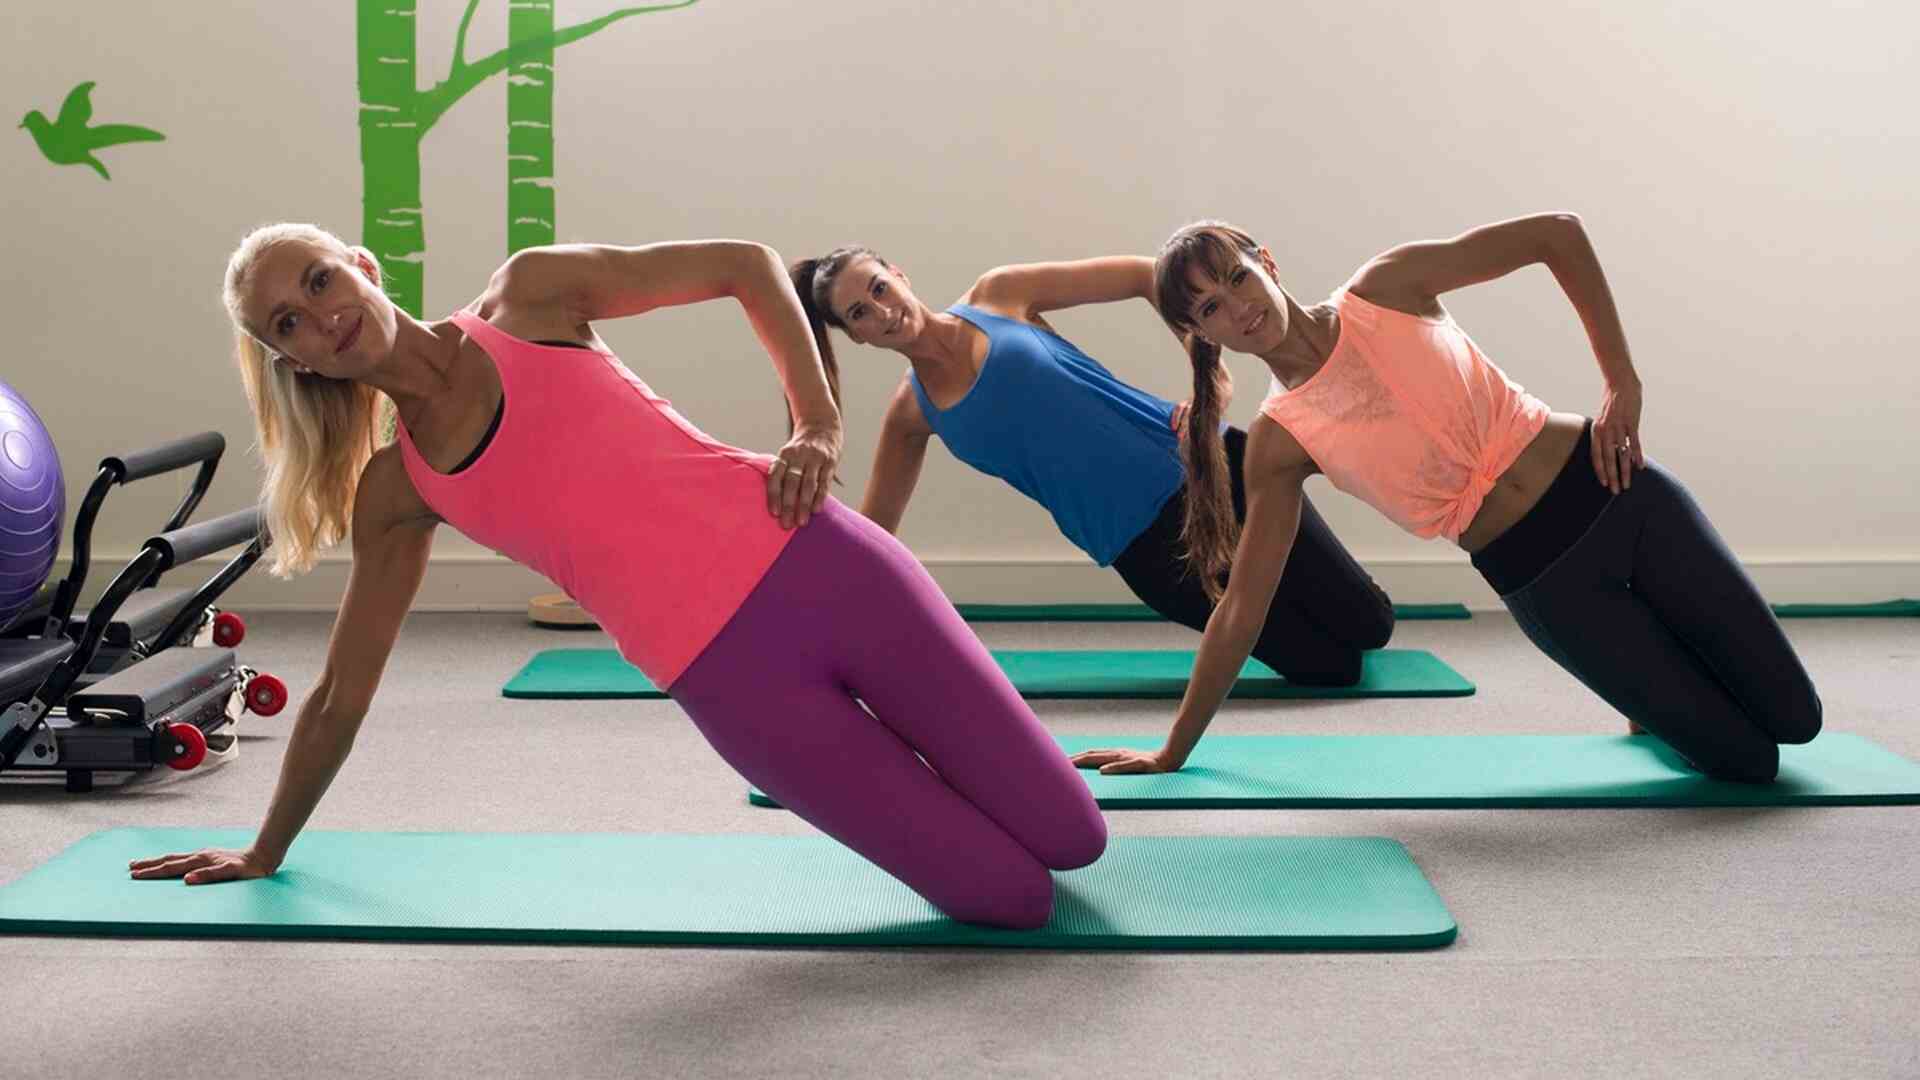 Versatile Pilates Ring Fitness Circle - Pelvic Floor Strengthener for Women